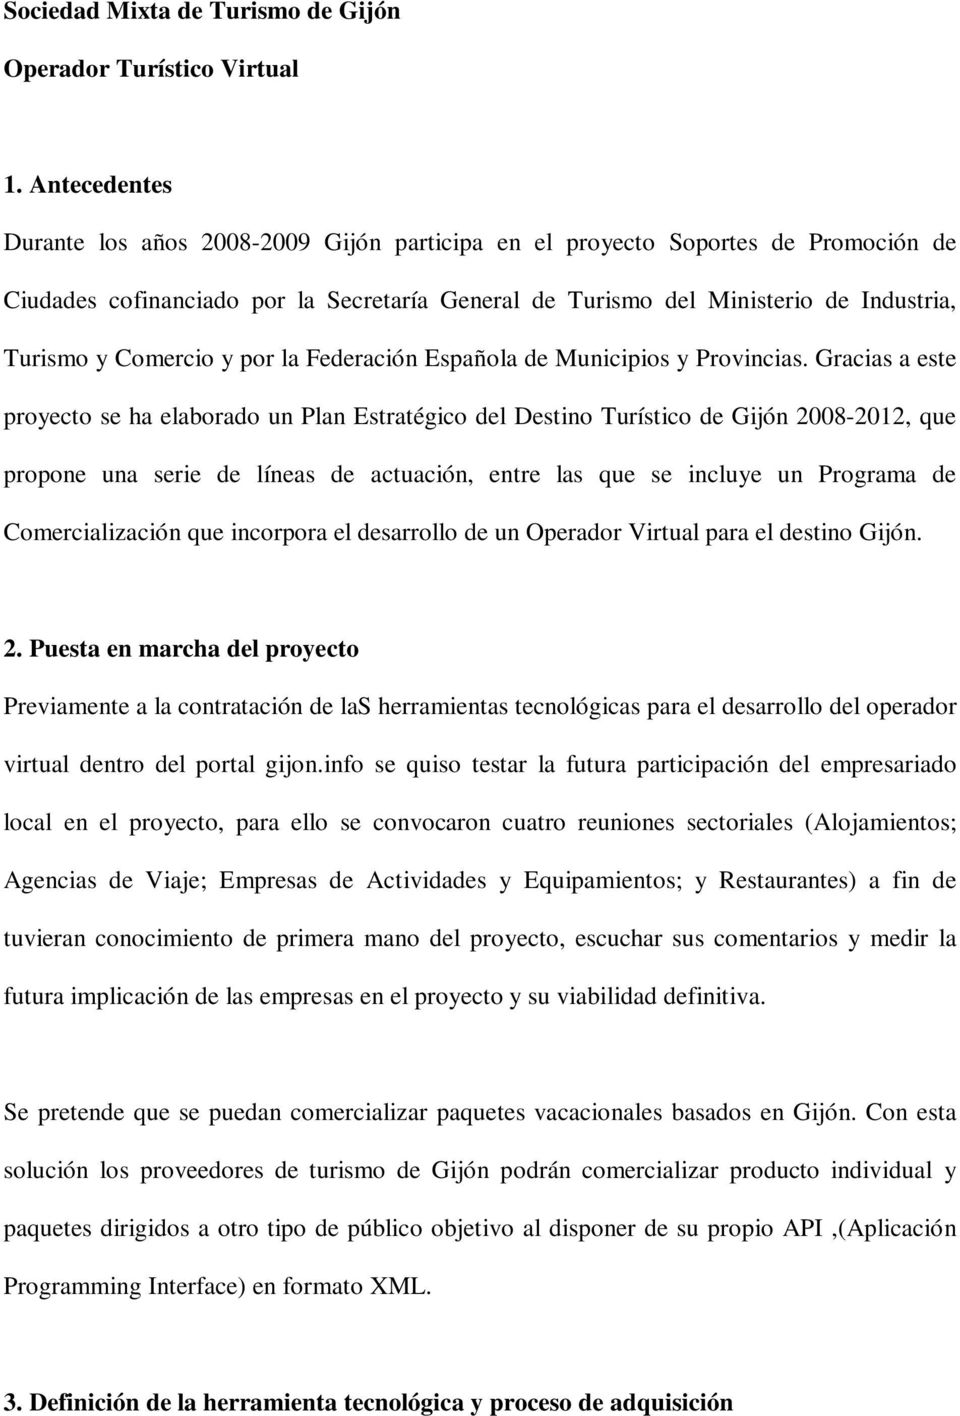 Comercio y por la Federación Española de Municipios y Provincias.